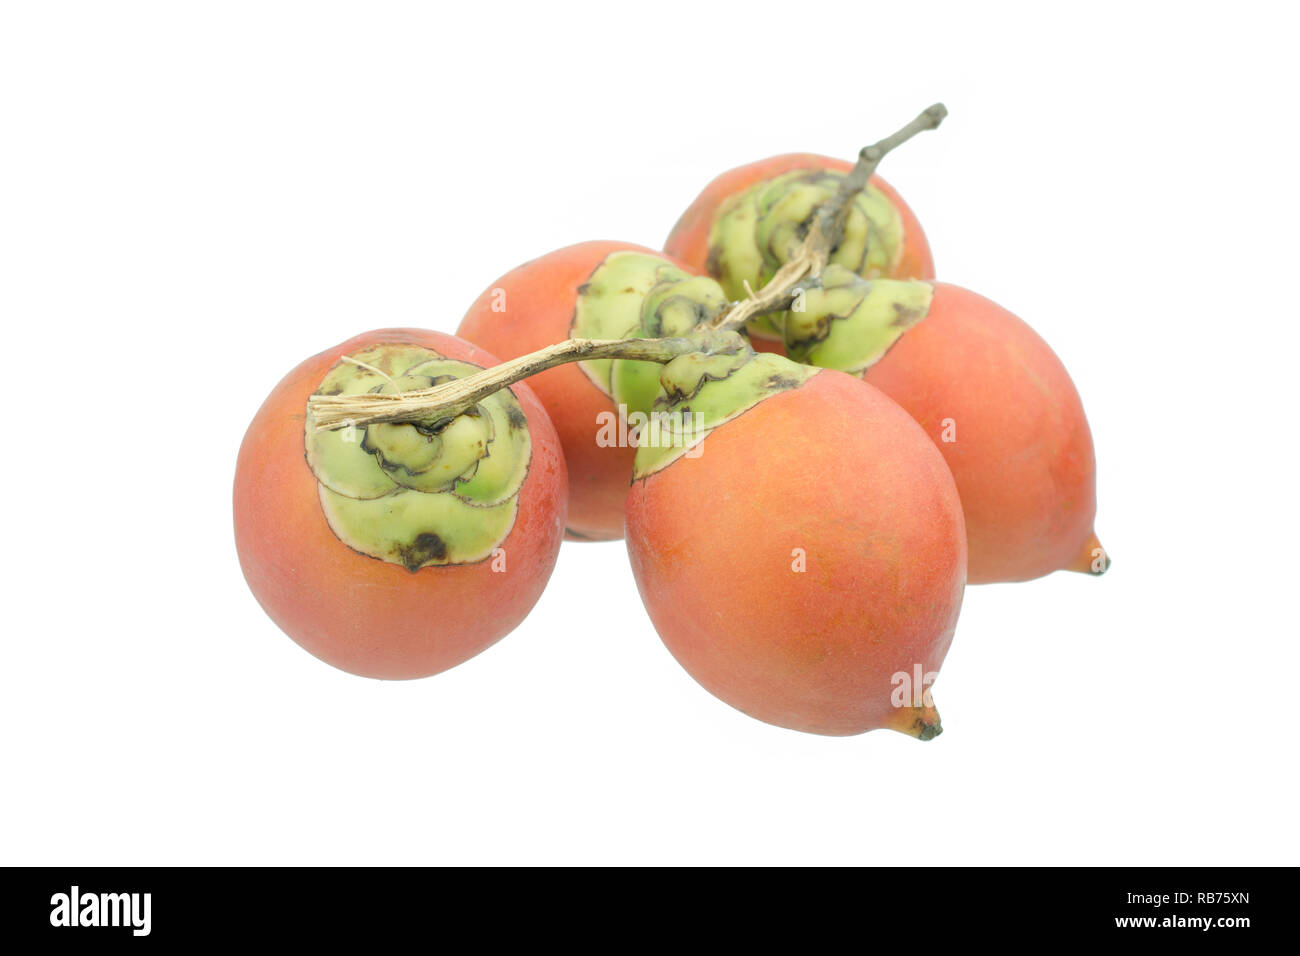 betel nut or Areca nut, isolated on white background Stock Photo